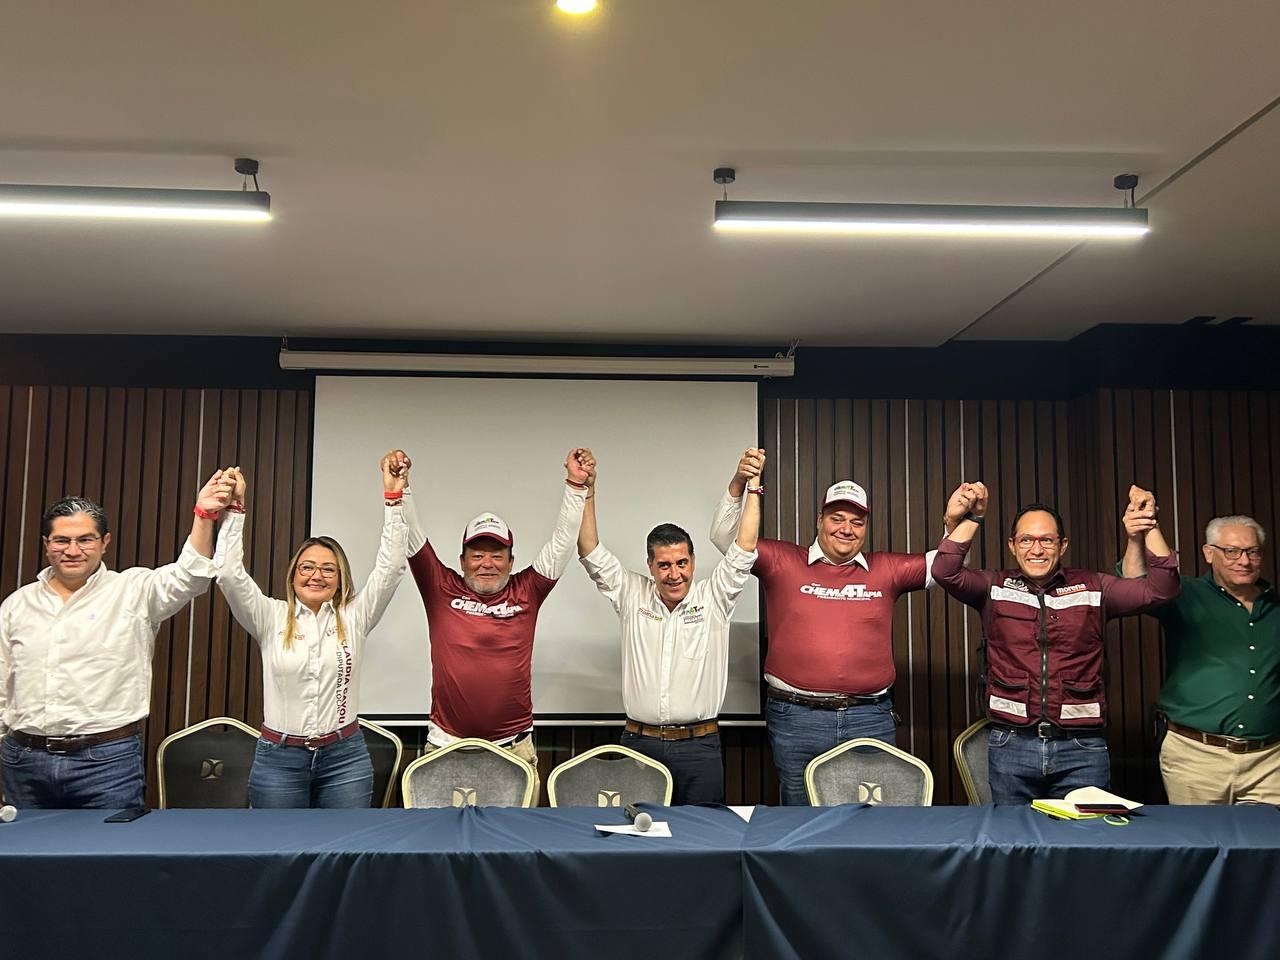 Candidatos de Querétaro Seguro se suman a campaña de Chema Tapia. Al considerar que los lineamientos de su partido los restringen, no les dan mar